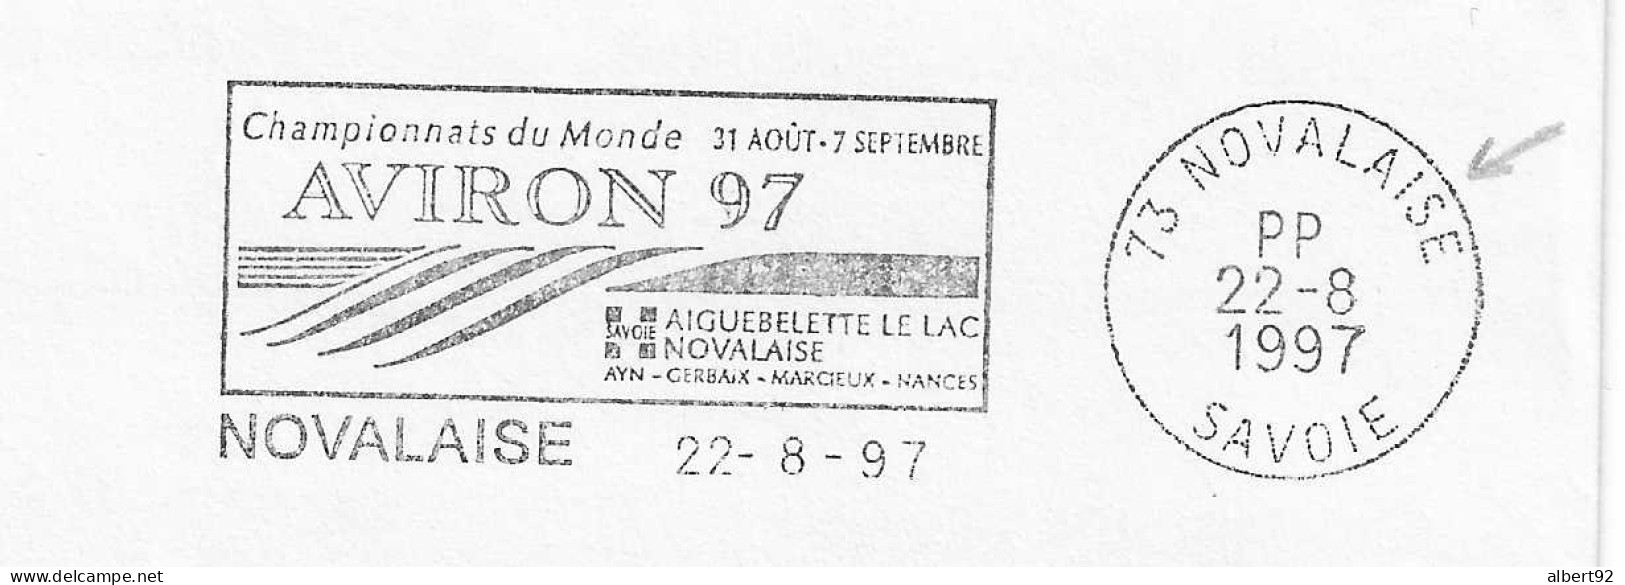 1997 Championnats Du Monde D'Aviron à Aiguebelette: Flamme Postale Port Payé (PP Dans Le Bloc Dateur) - Rudersport